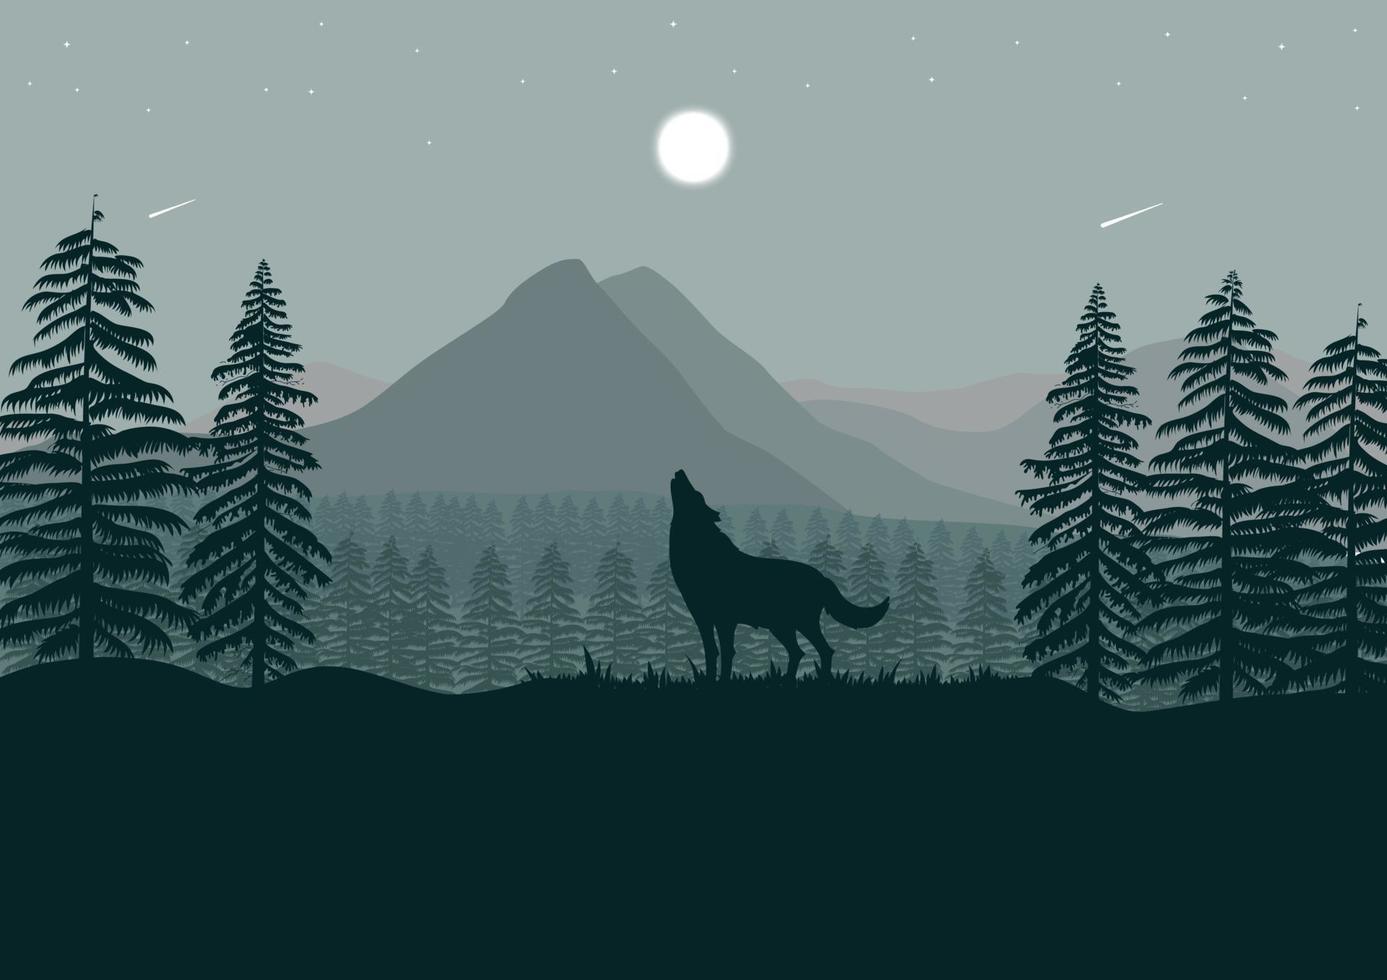 lobo y montañas paisaje con luna llena en la noche ilustración vectorial vector